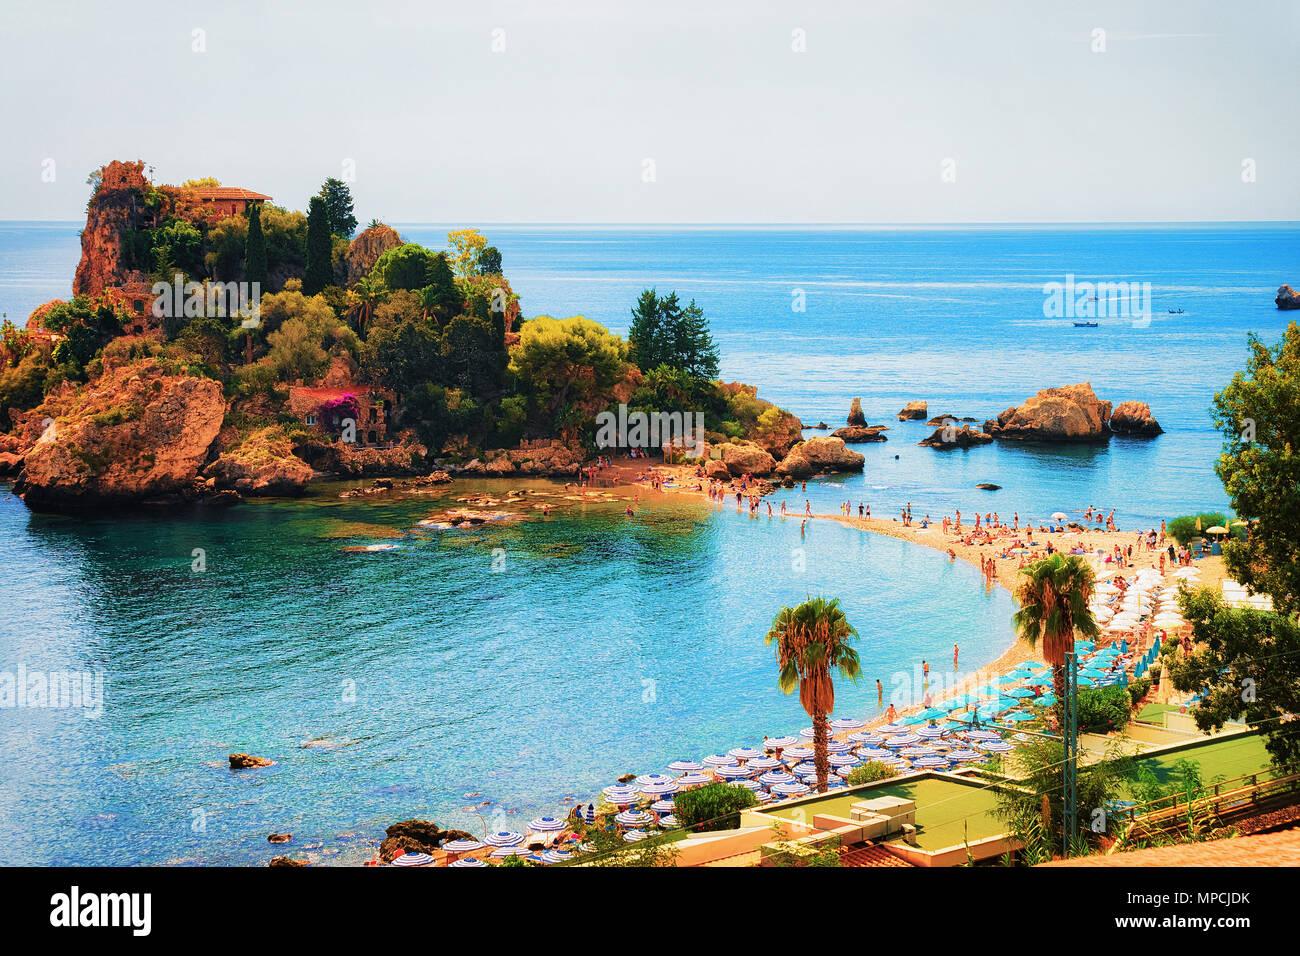 Isola Bella island and beach in Taormina, Sicily, Italy Stock Photo